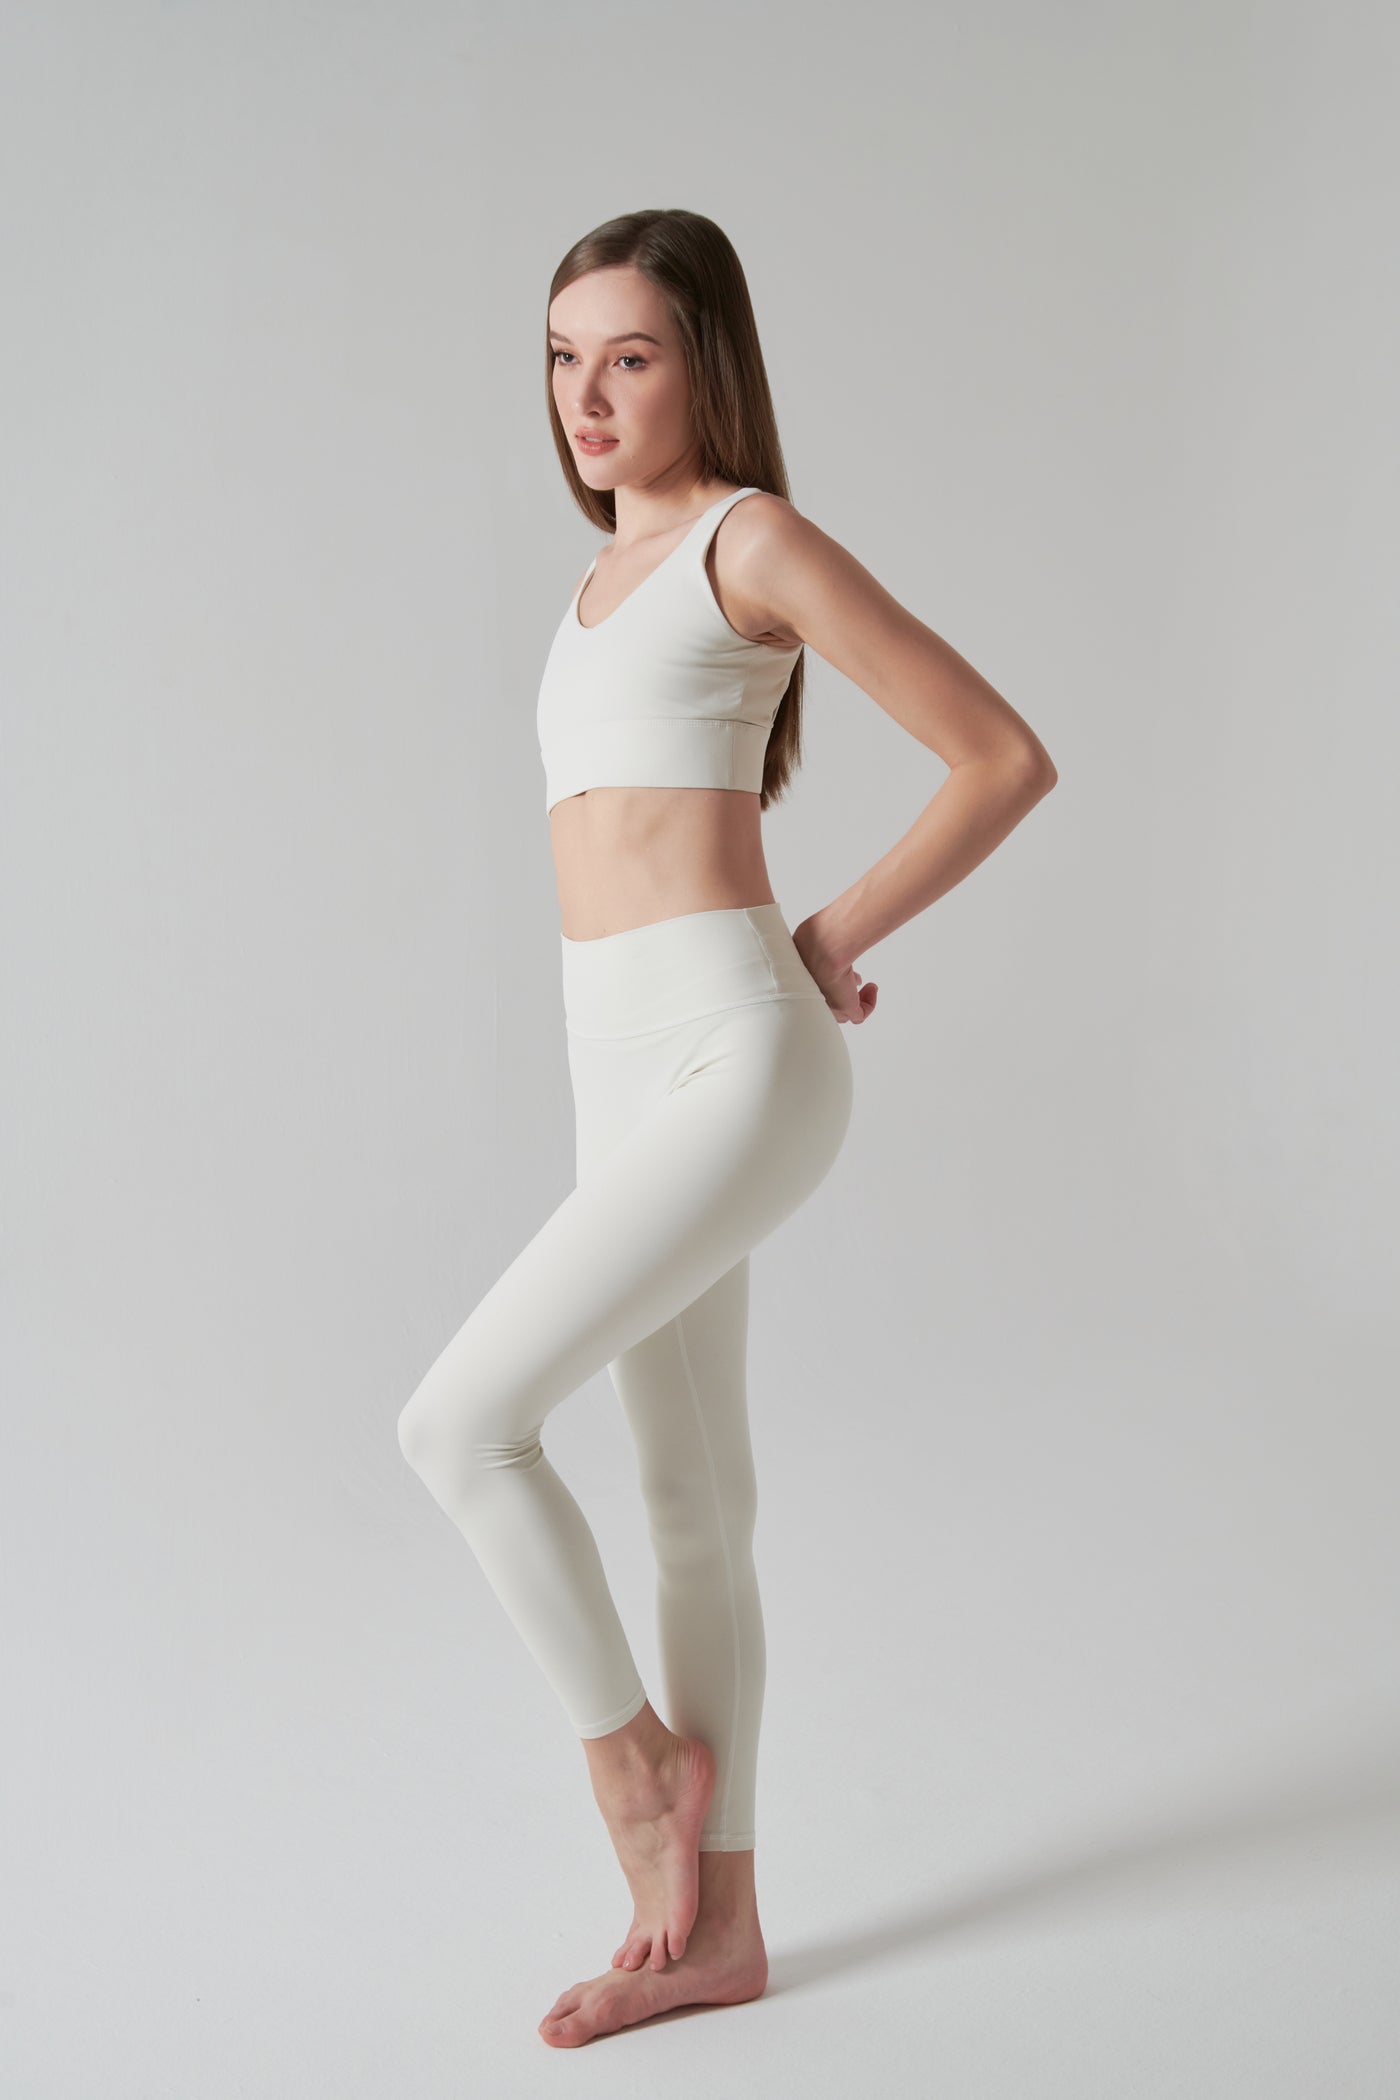 Legging Sport Femme Taille Haute blanc